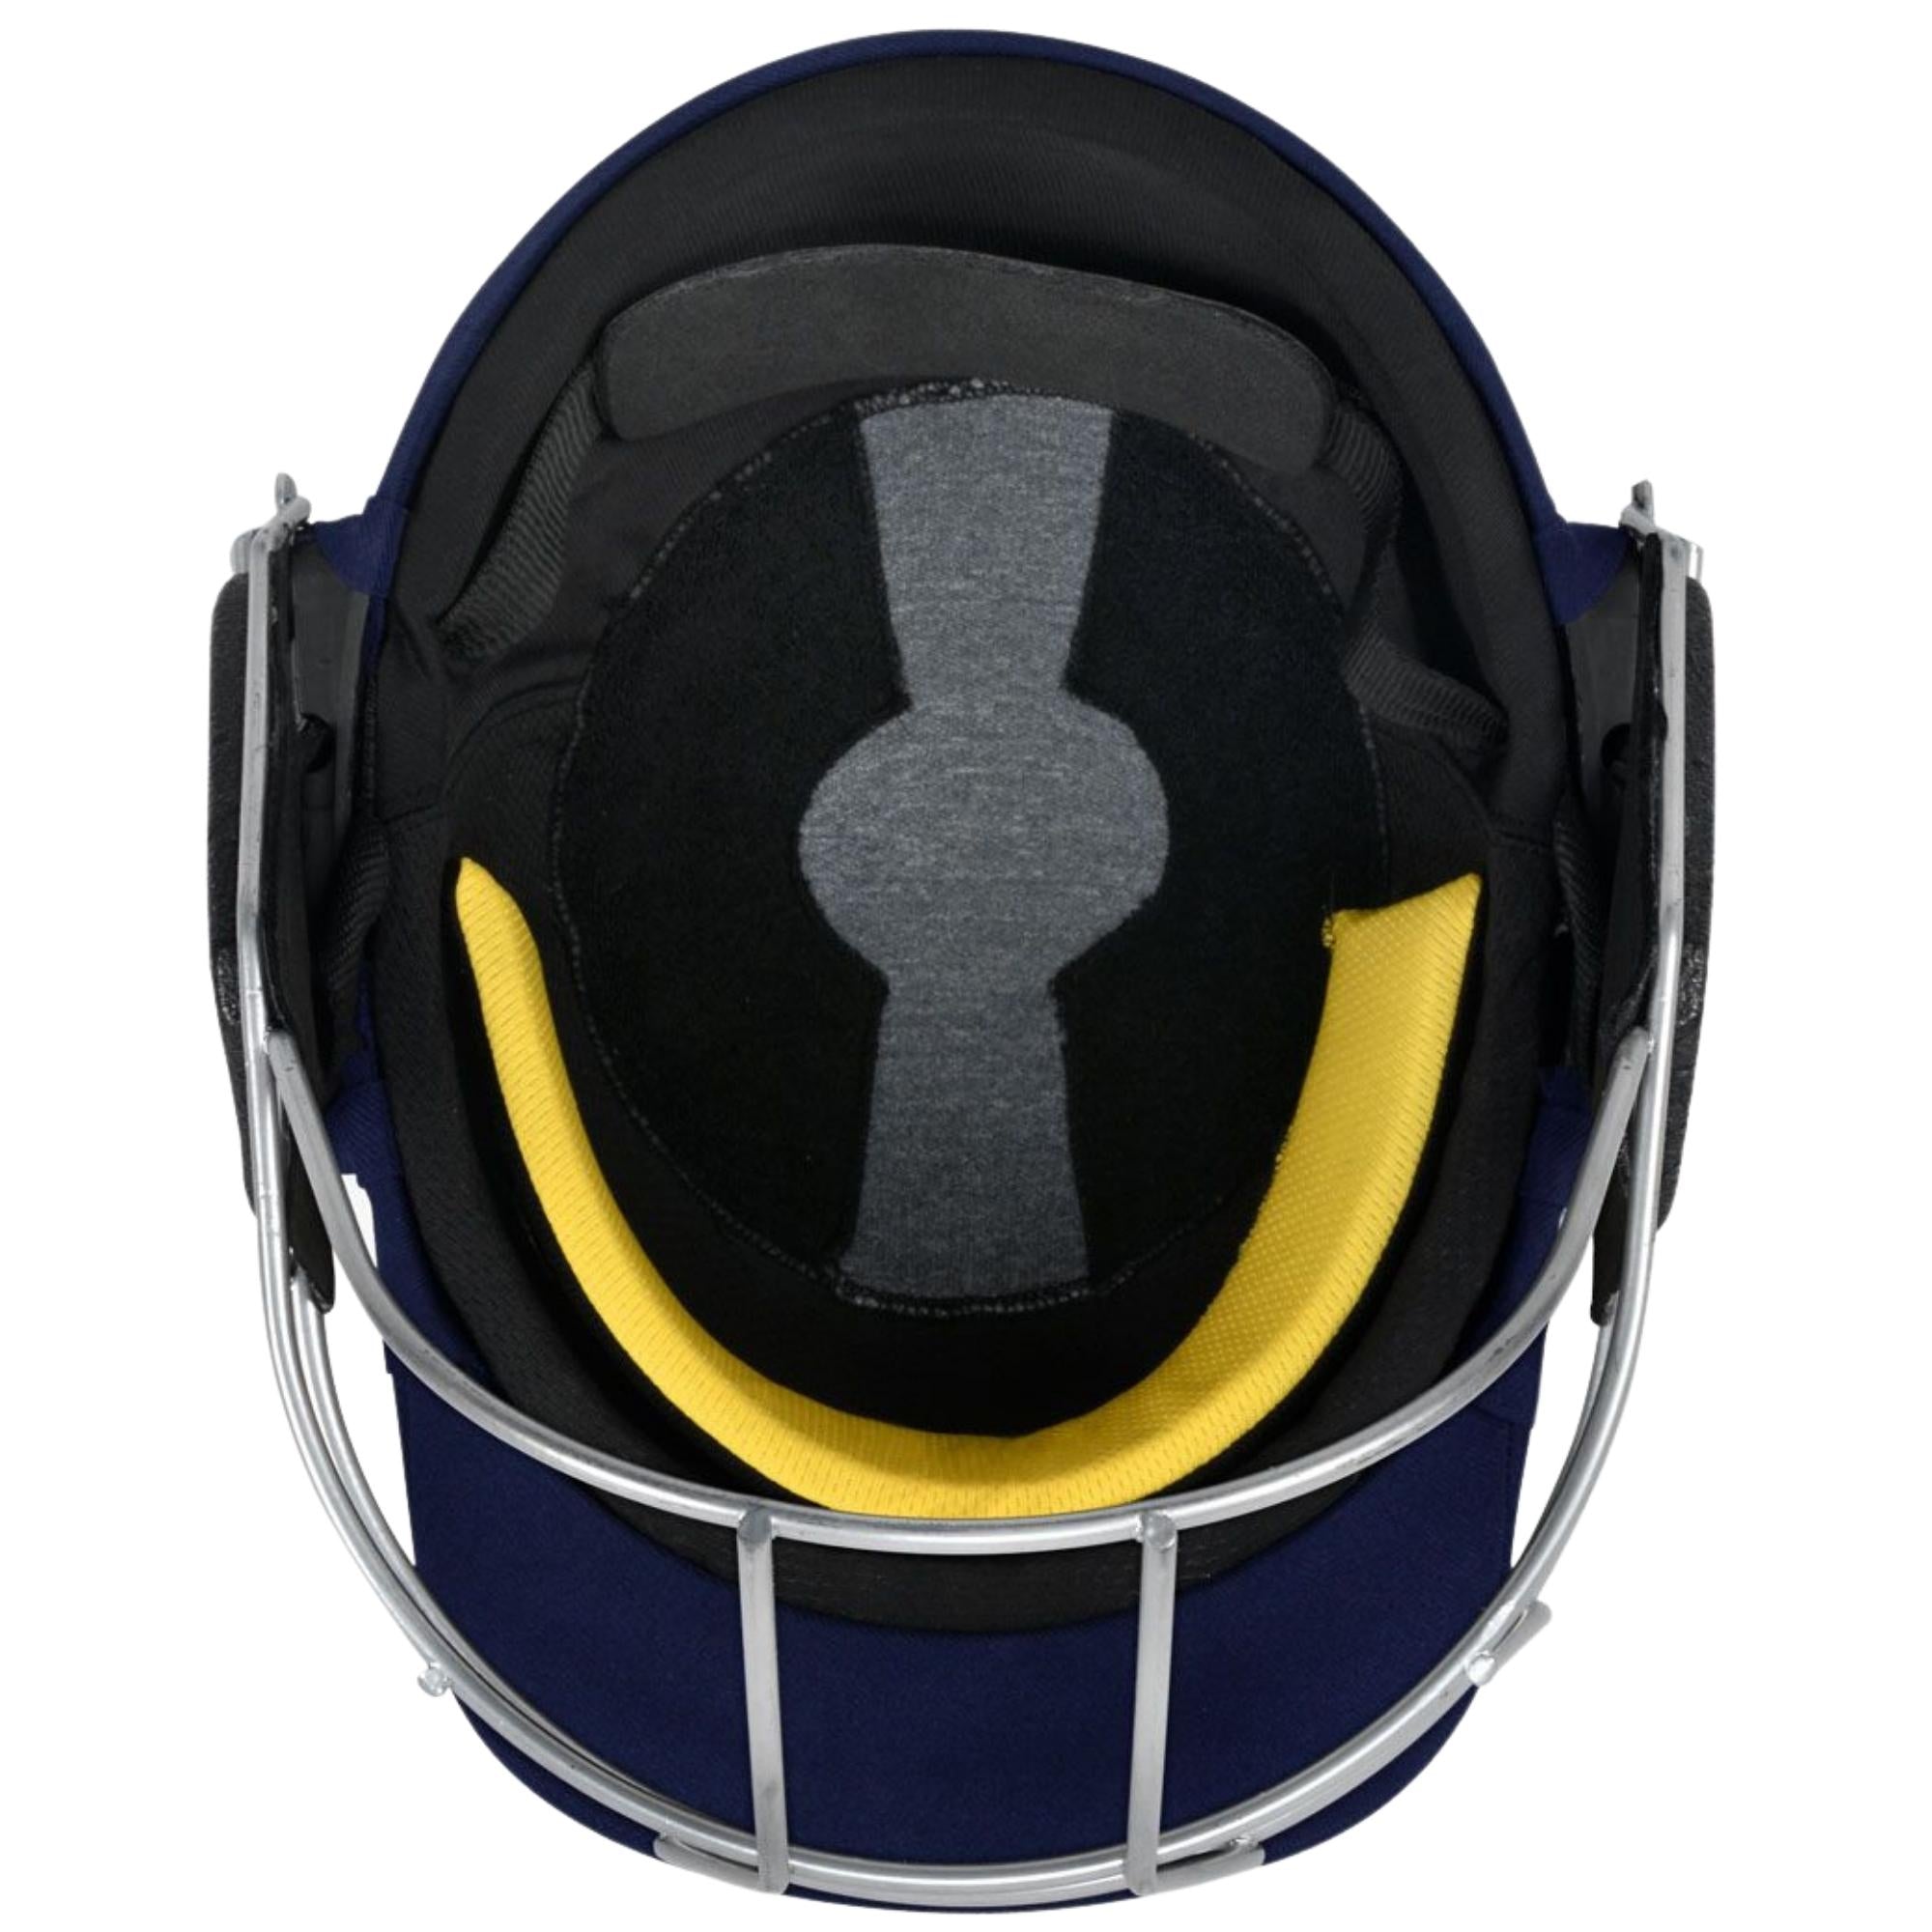 DSC Scud Titanium Cricket Helmet